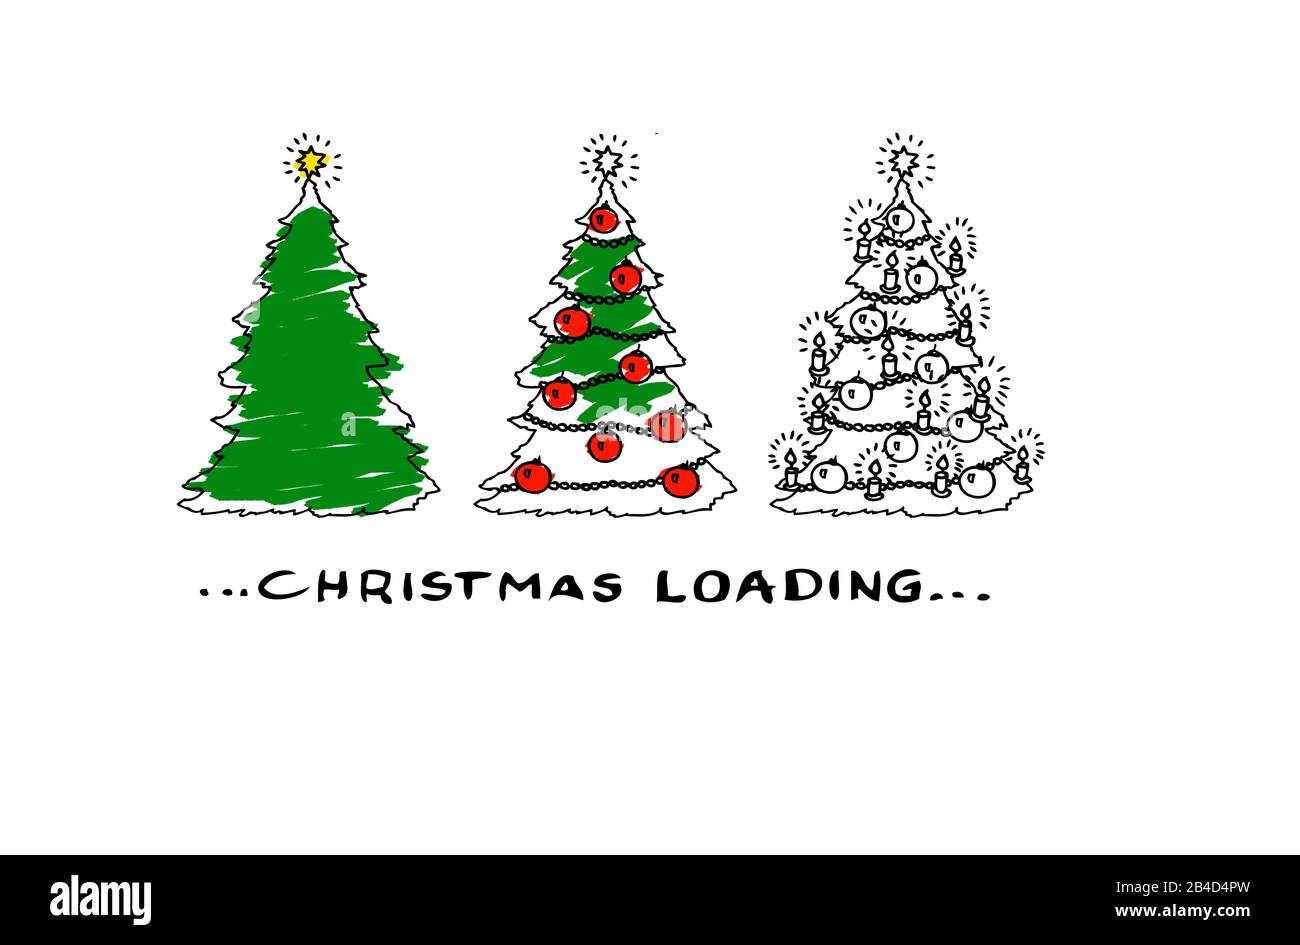 Christmas loading and Christmas trees Stock Photo